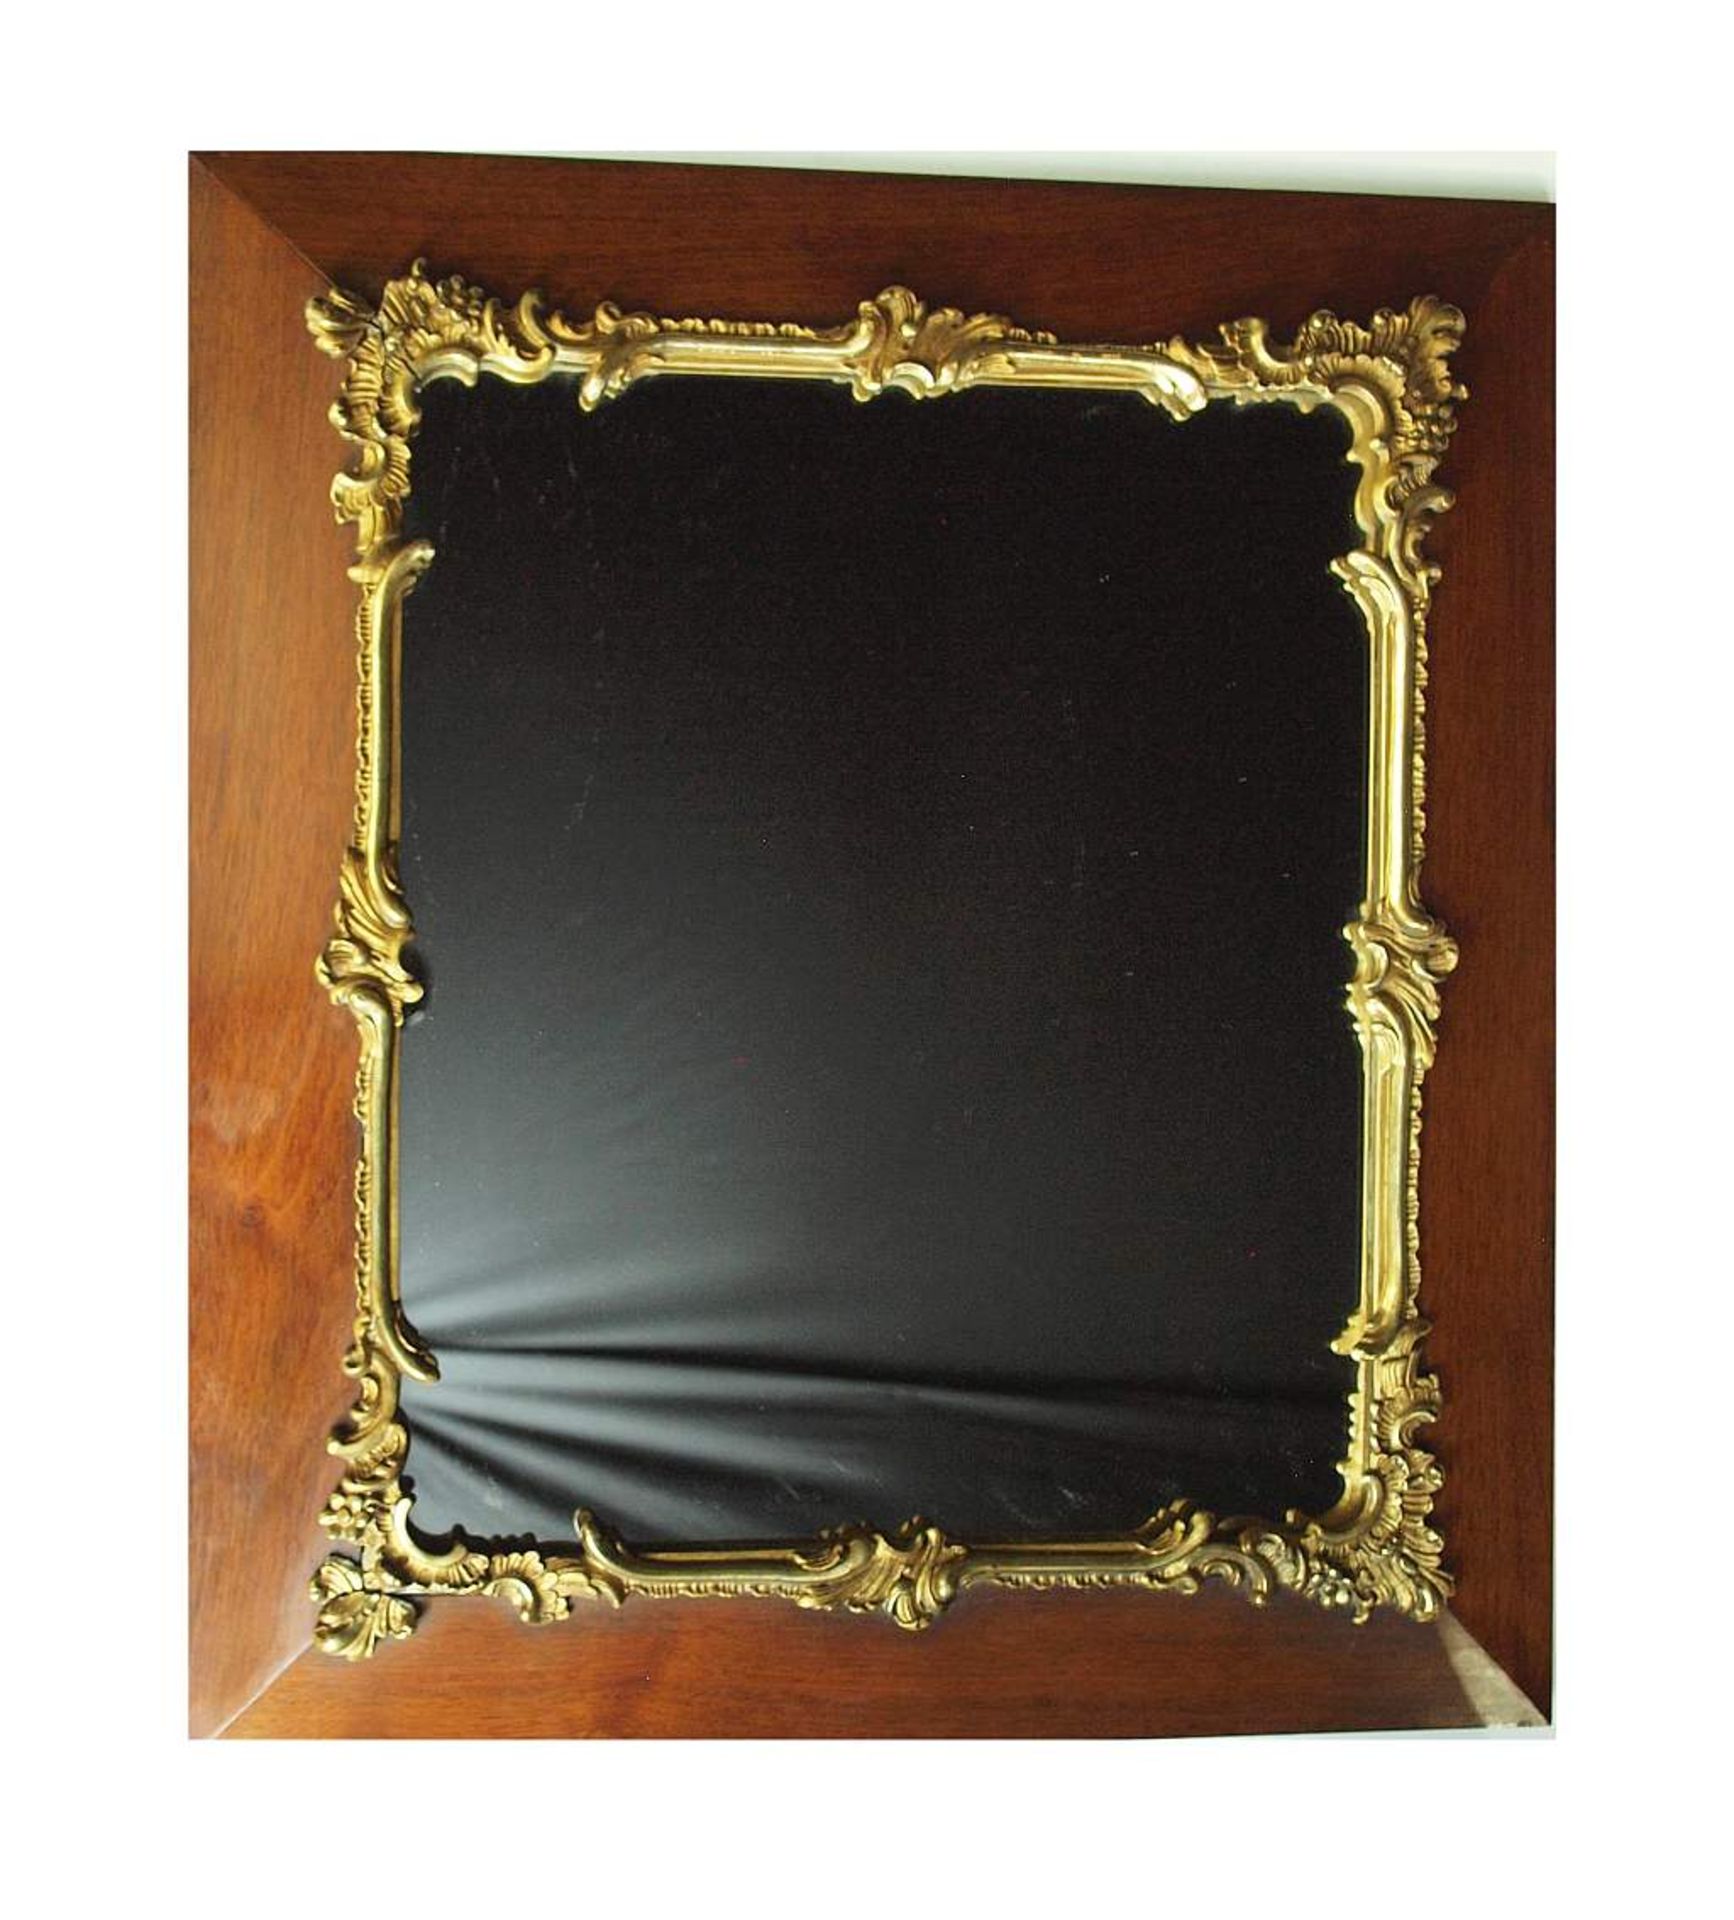 Wandspiegel. Wandspiegel. Spiegel ohne Facettenschliff, breiter Rahmen mit Rocaillen-Stuckdekor. - Bild 2 aus 3